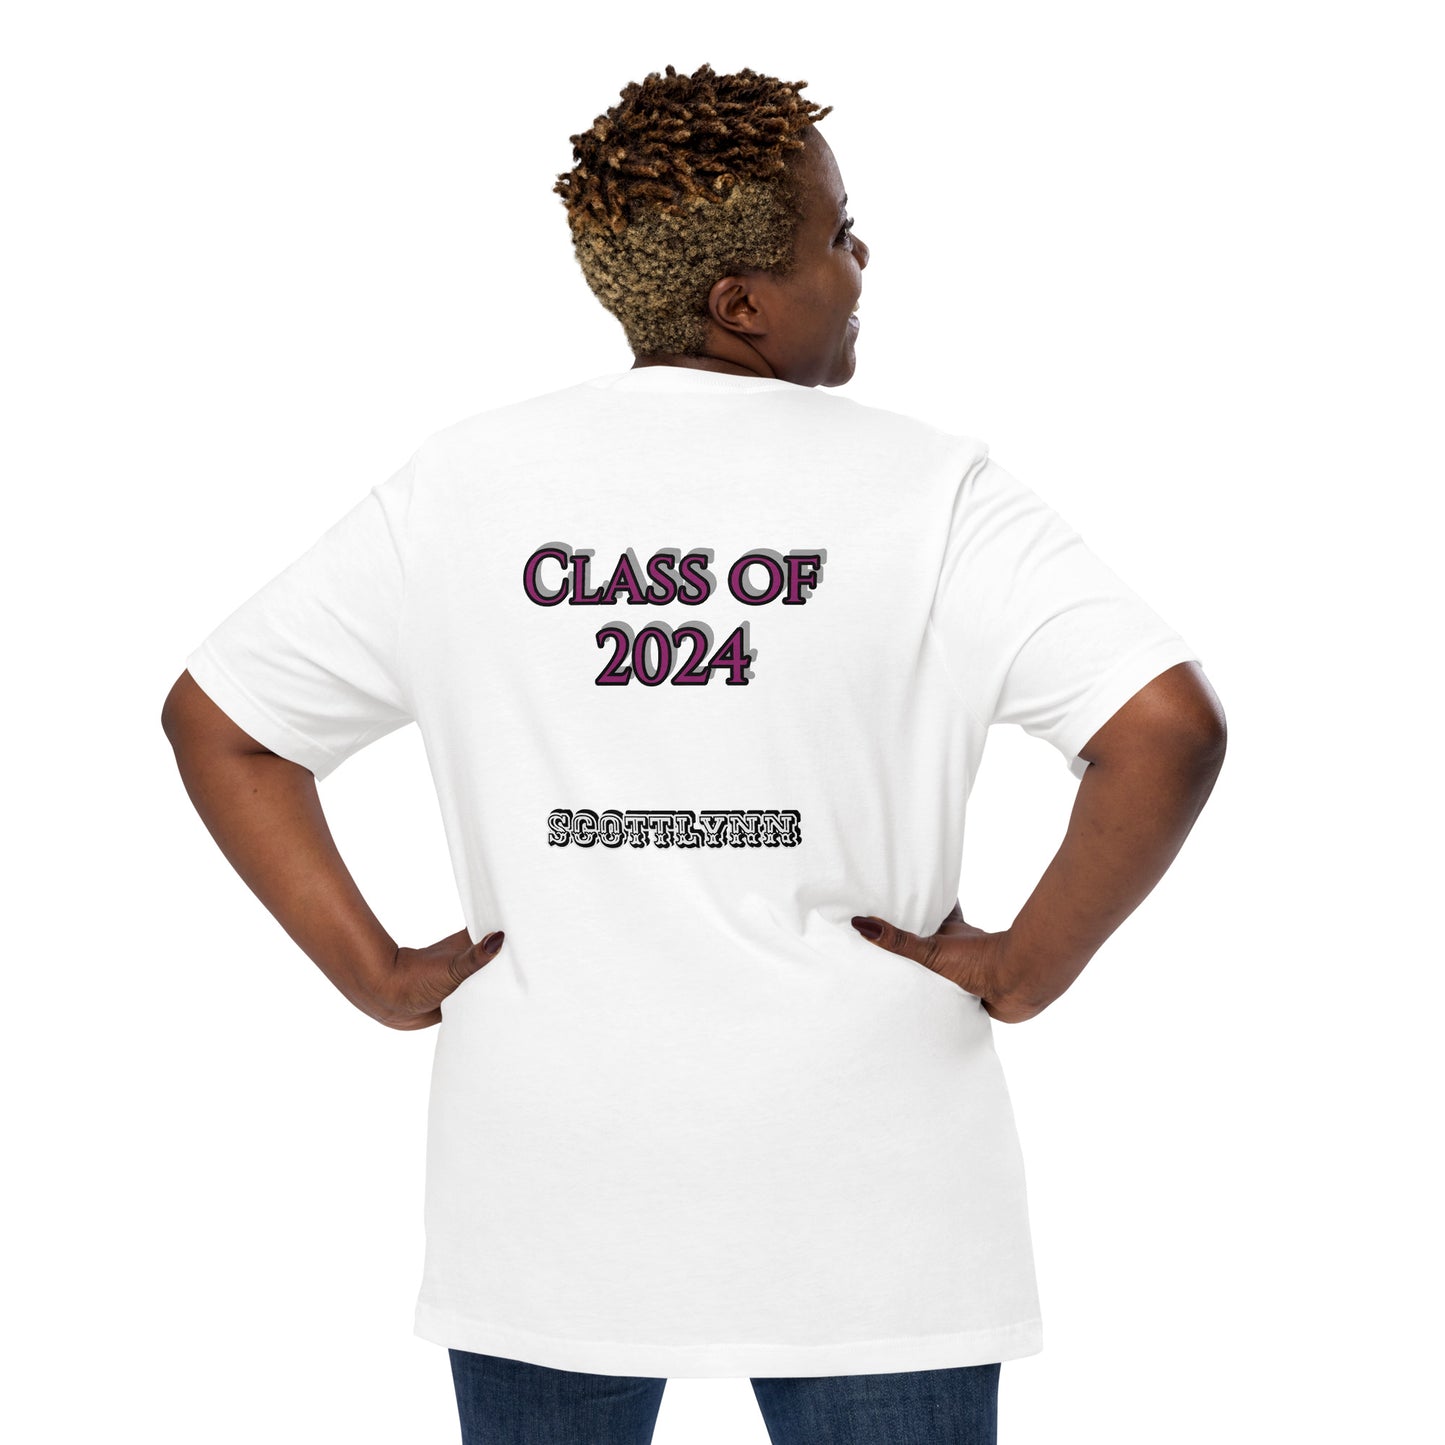 Class of 2024 T-shirt CUSTOM MADE